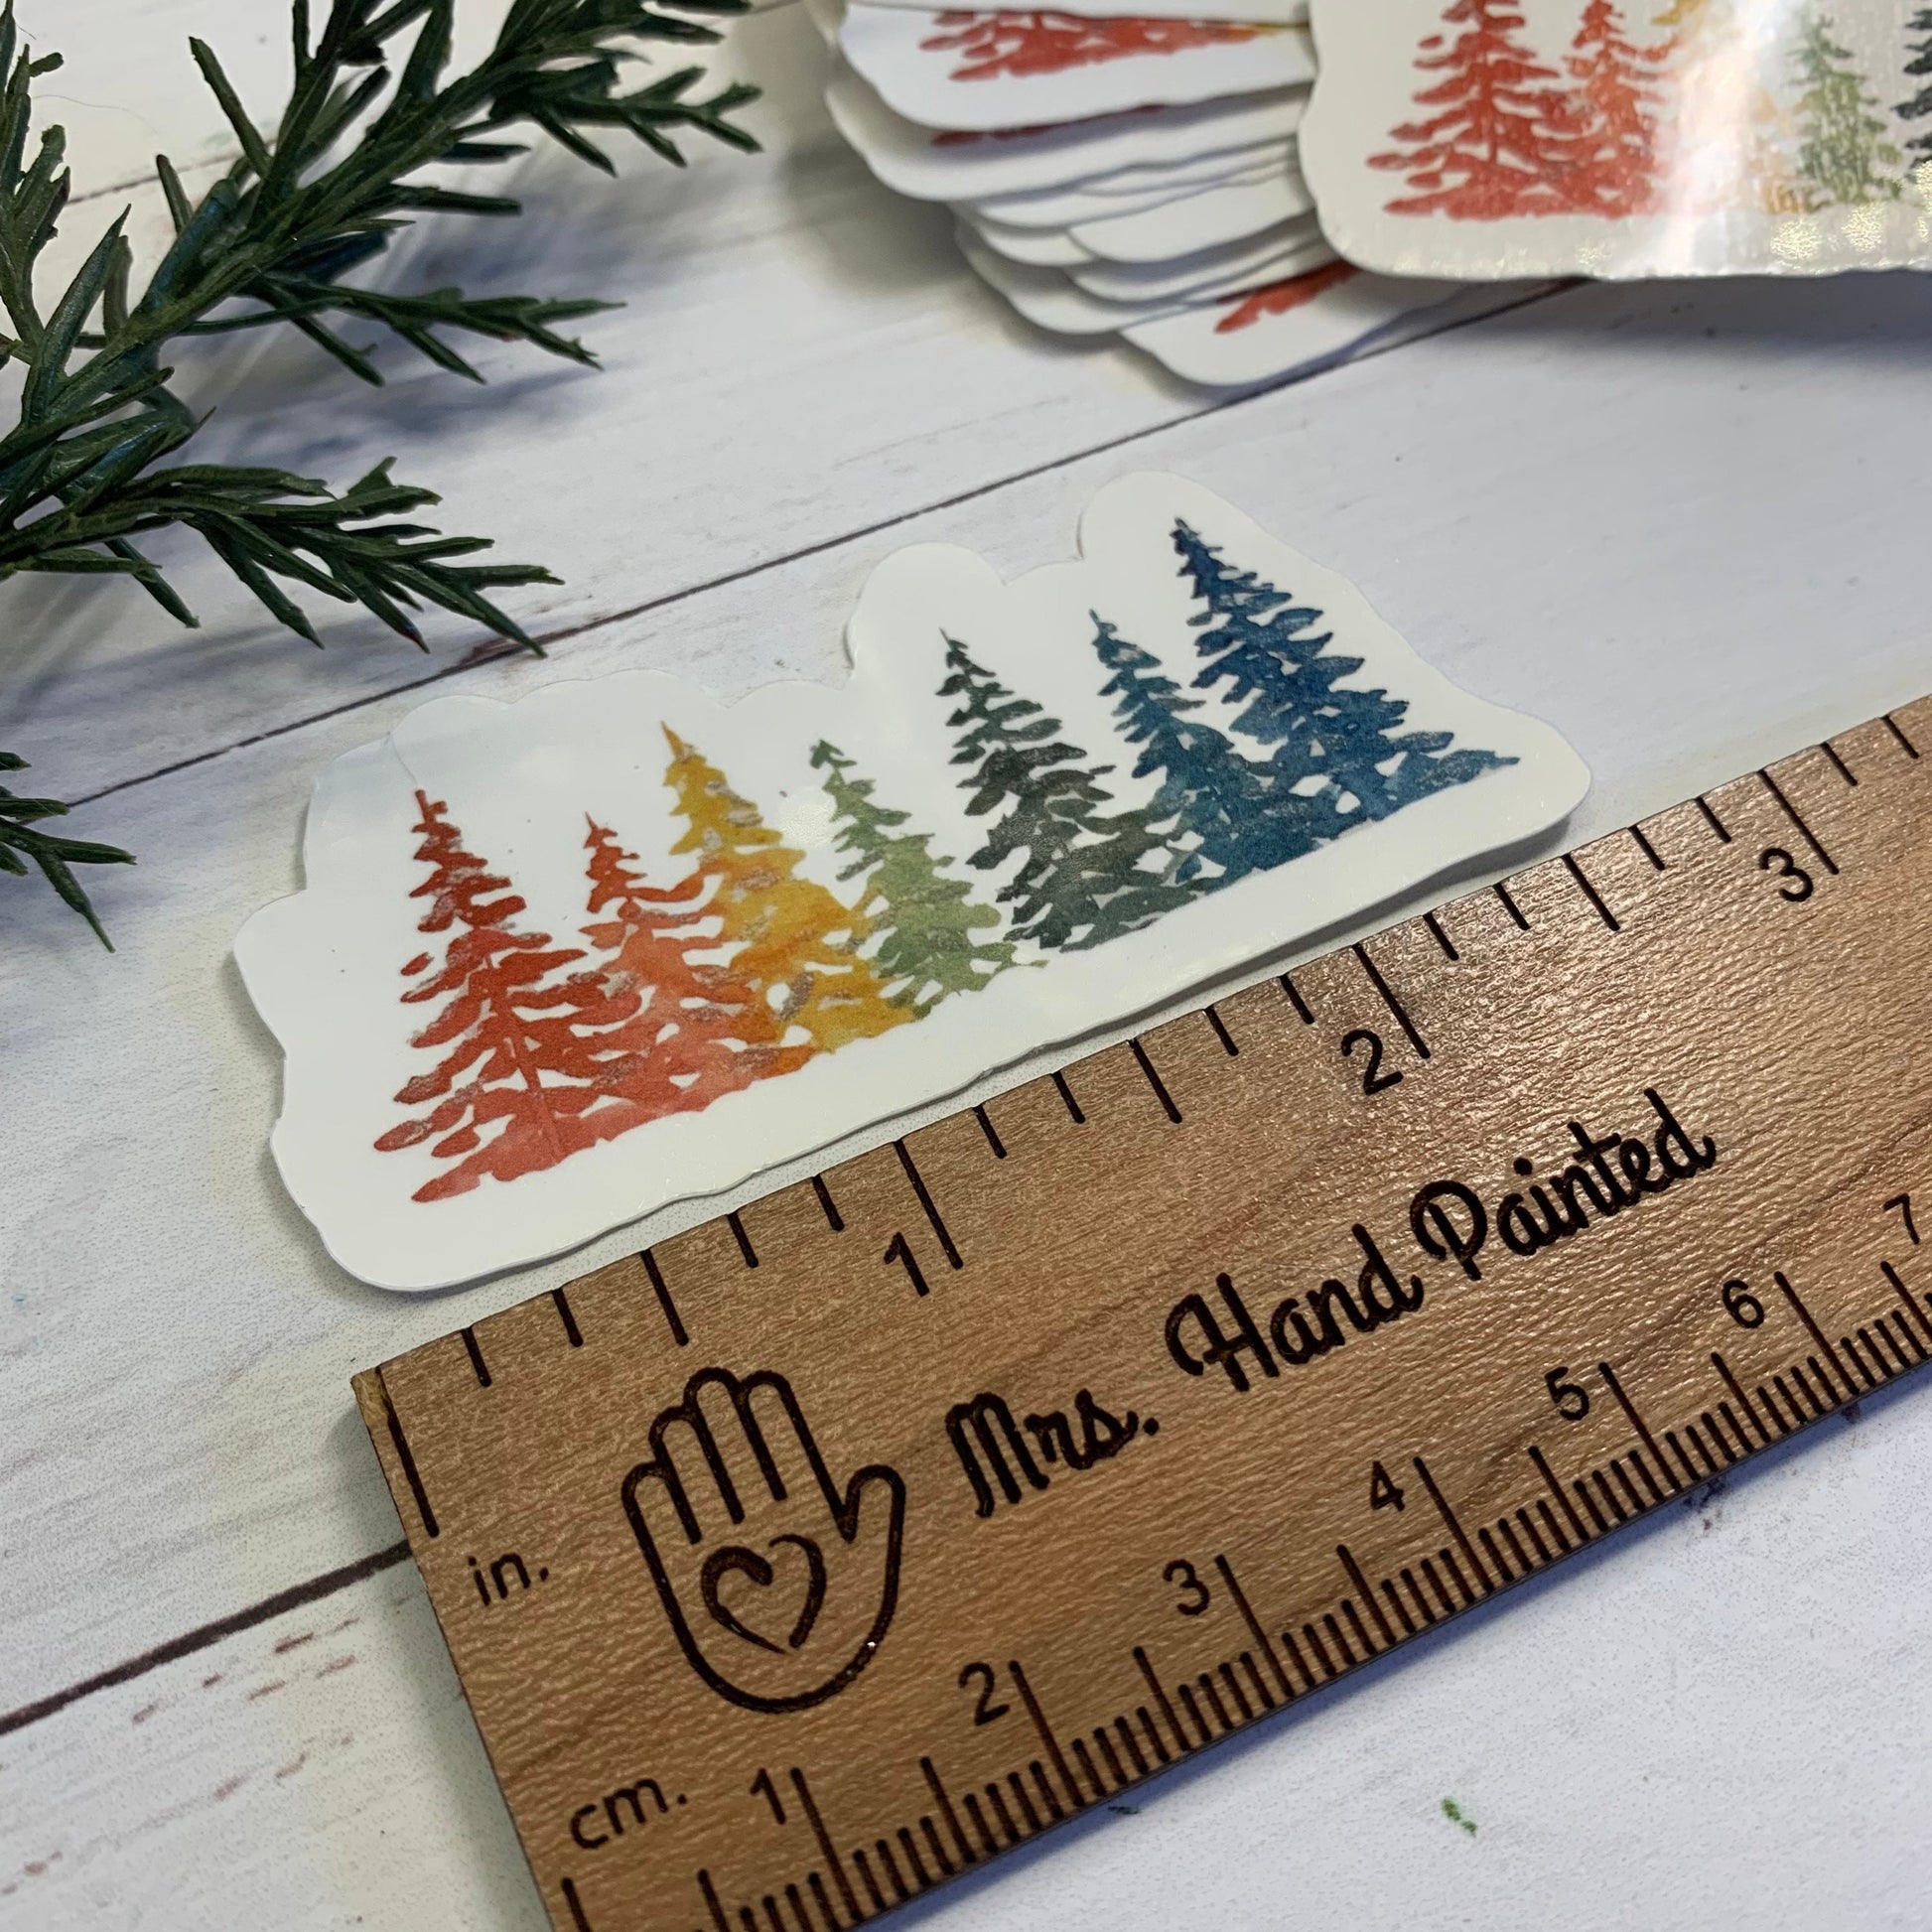 Rainbow Holiday Pine Trees Die Cut Laminated Vinyl Stickers, Waterproof Glossy Vinyl